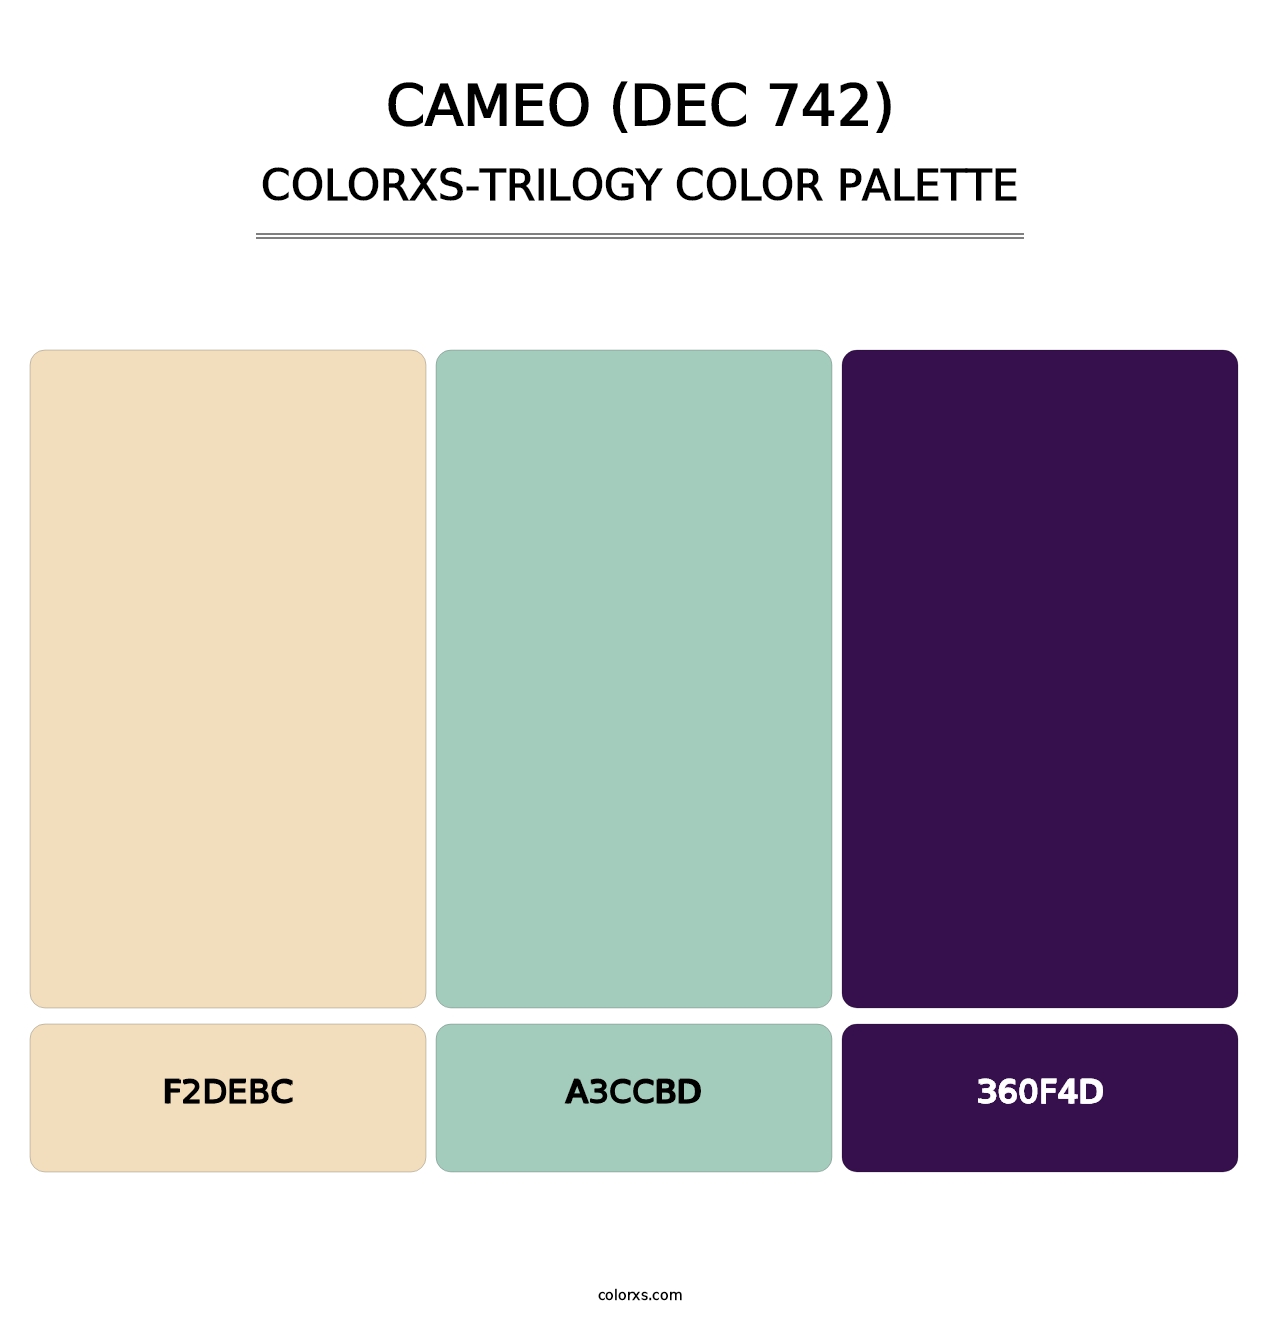 Cameo (DEC 742) - Colorxs Trilogy Palette